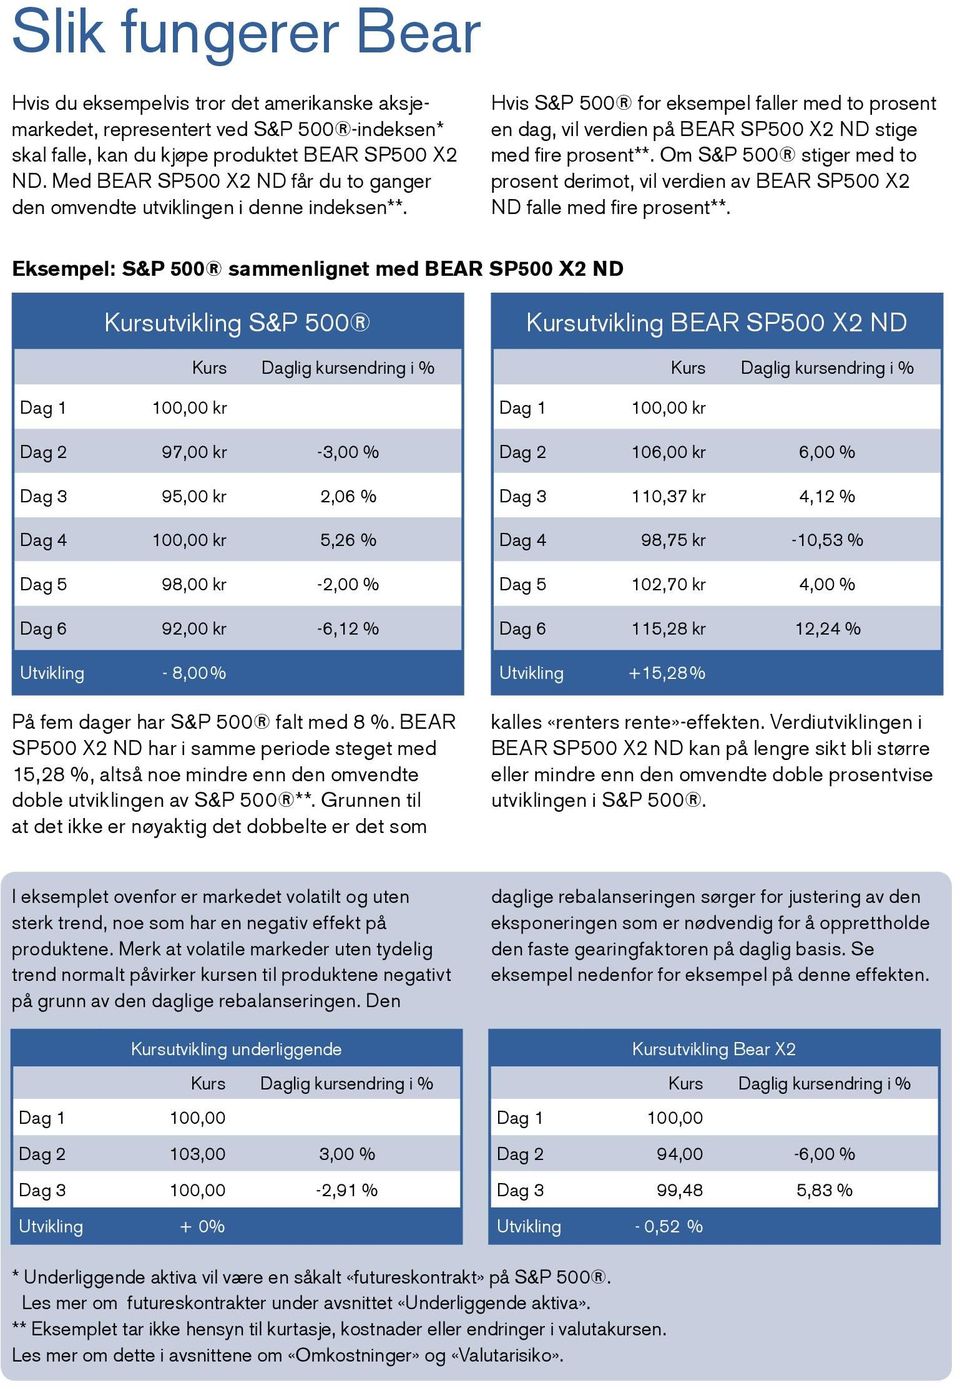 Om S&P 500 stiger med to prosent derimot, vil verdien av BEAR SP500 X2 ND falle med fire prosent**.